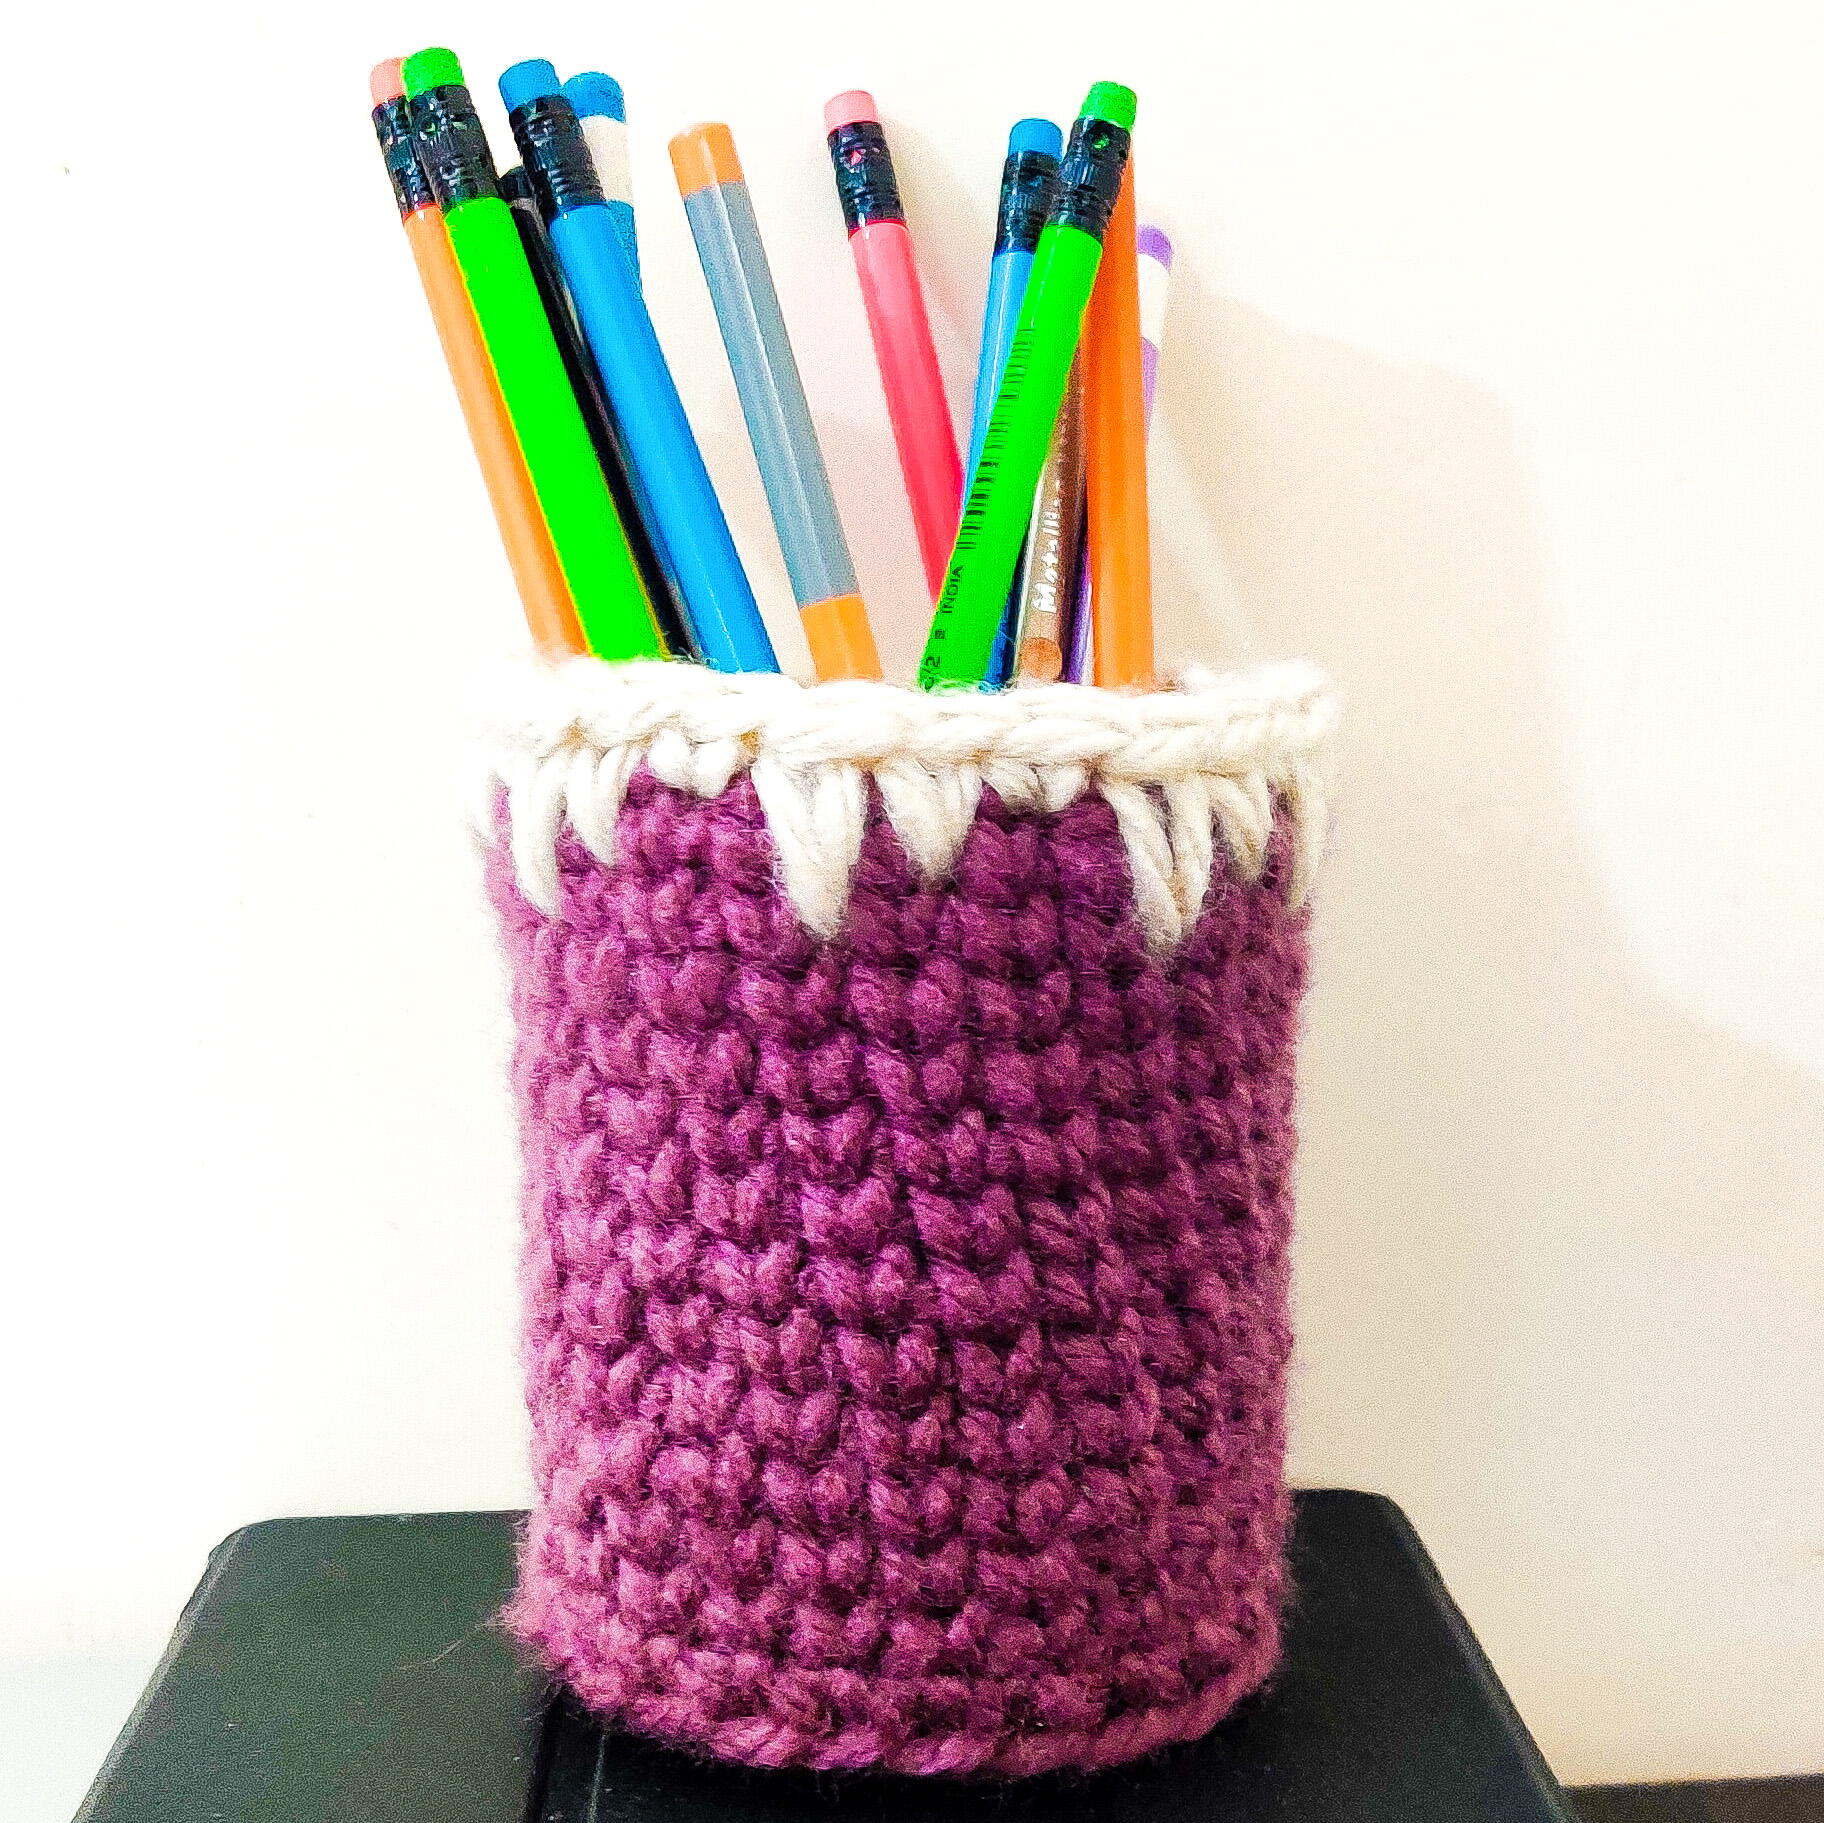 🇺🇸Crochet Pencil Holder Cover Tutorial/Crochet Pencil Pouch Holder/DIY  Crochet Pen Basket 